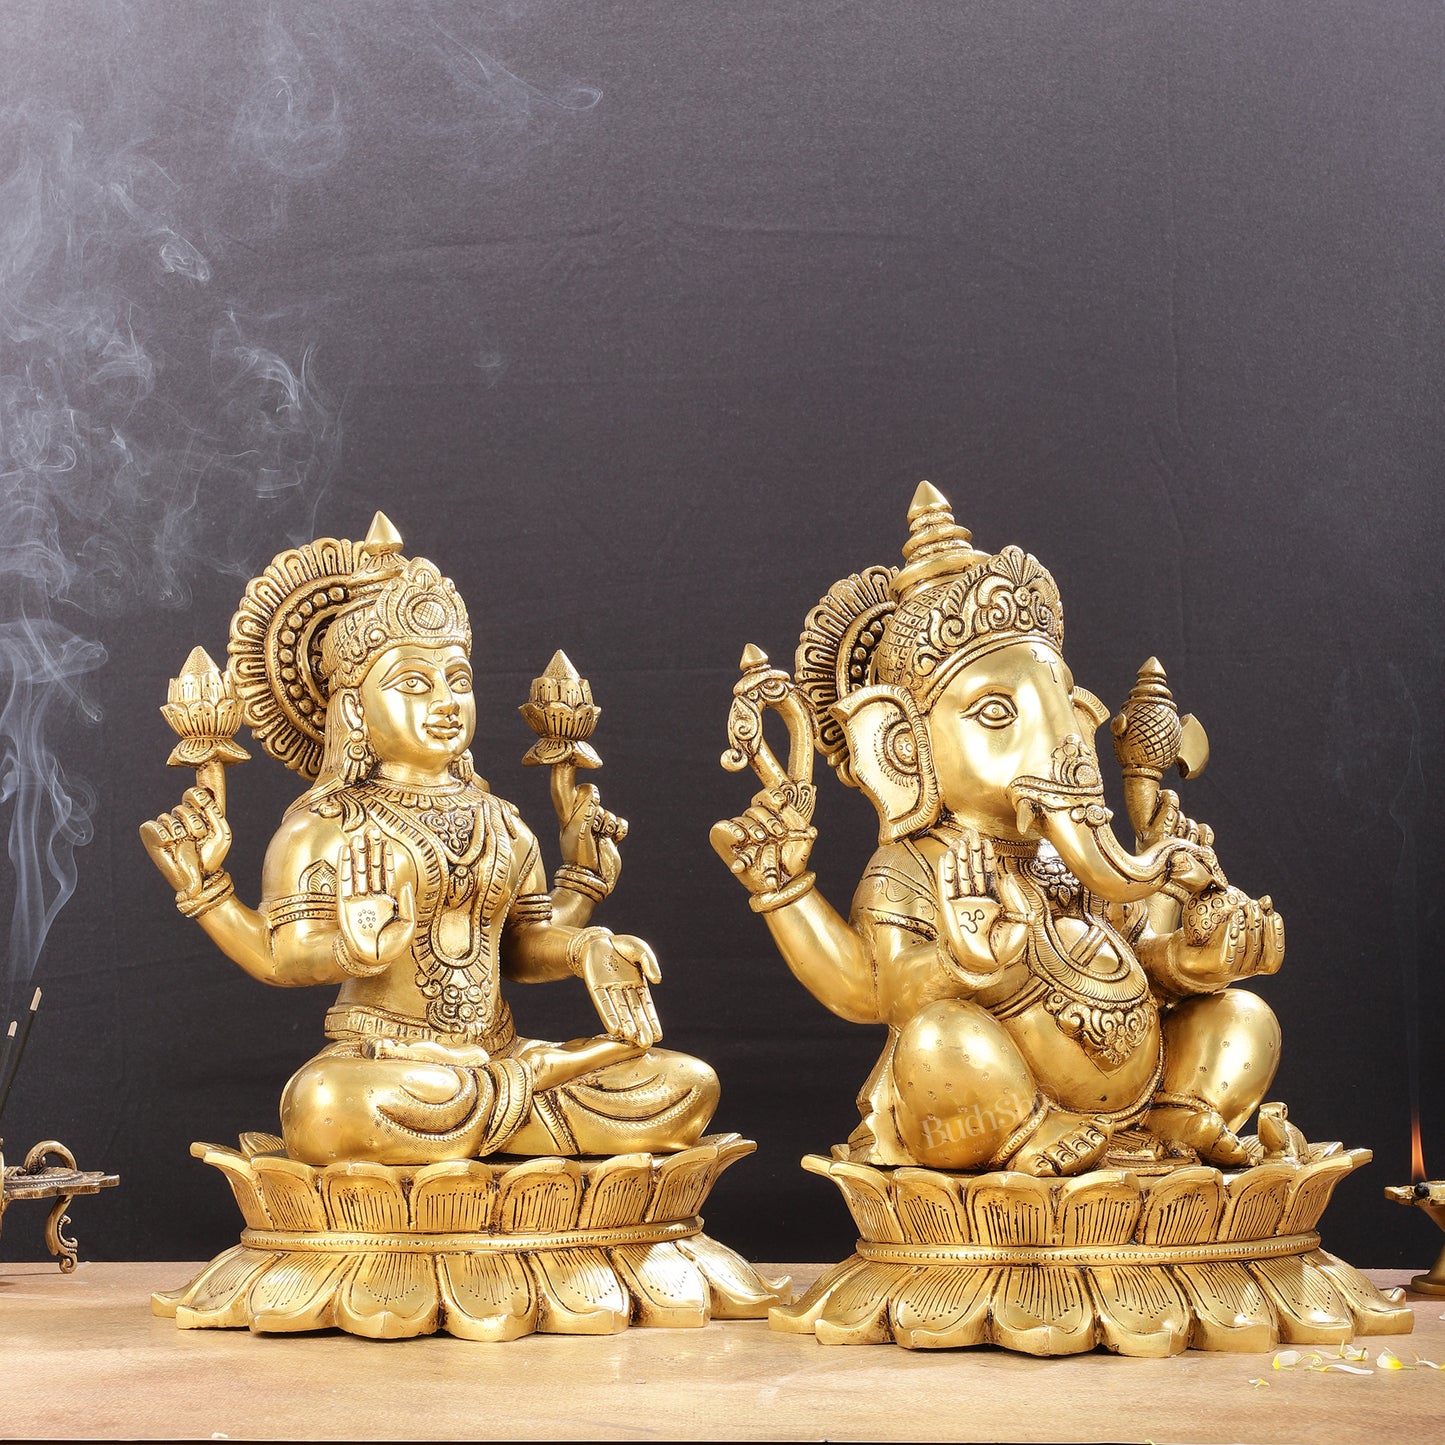 Large Pure Brass Superfine Ganesha and Lakshmi on Lotus Idols - 13.5"